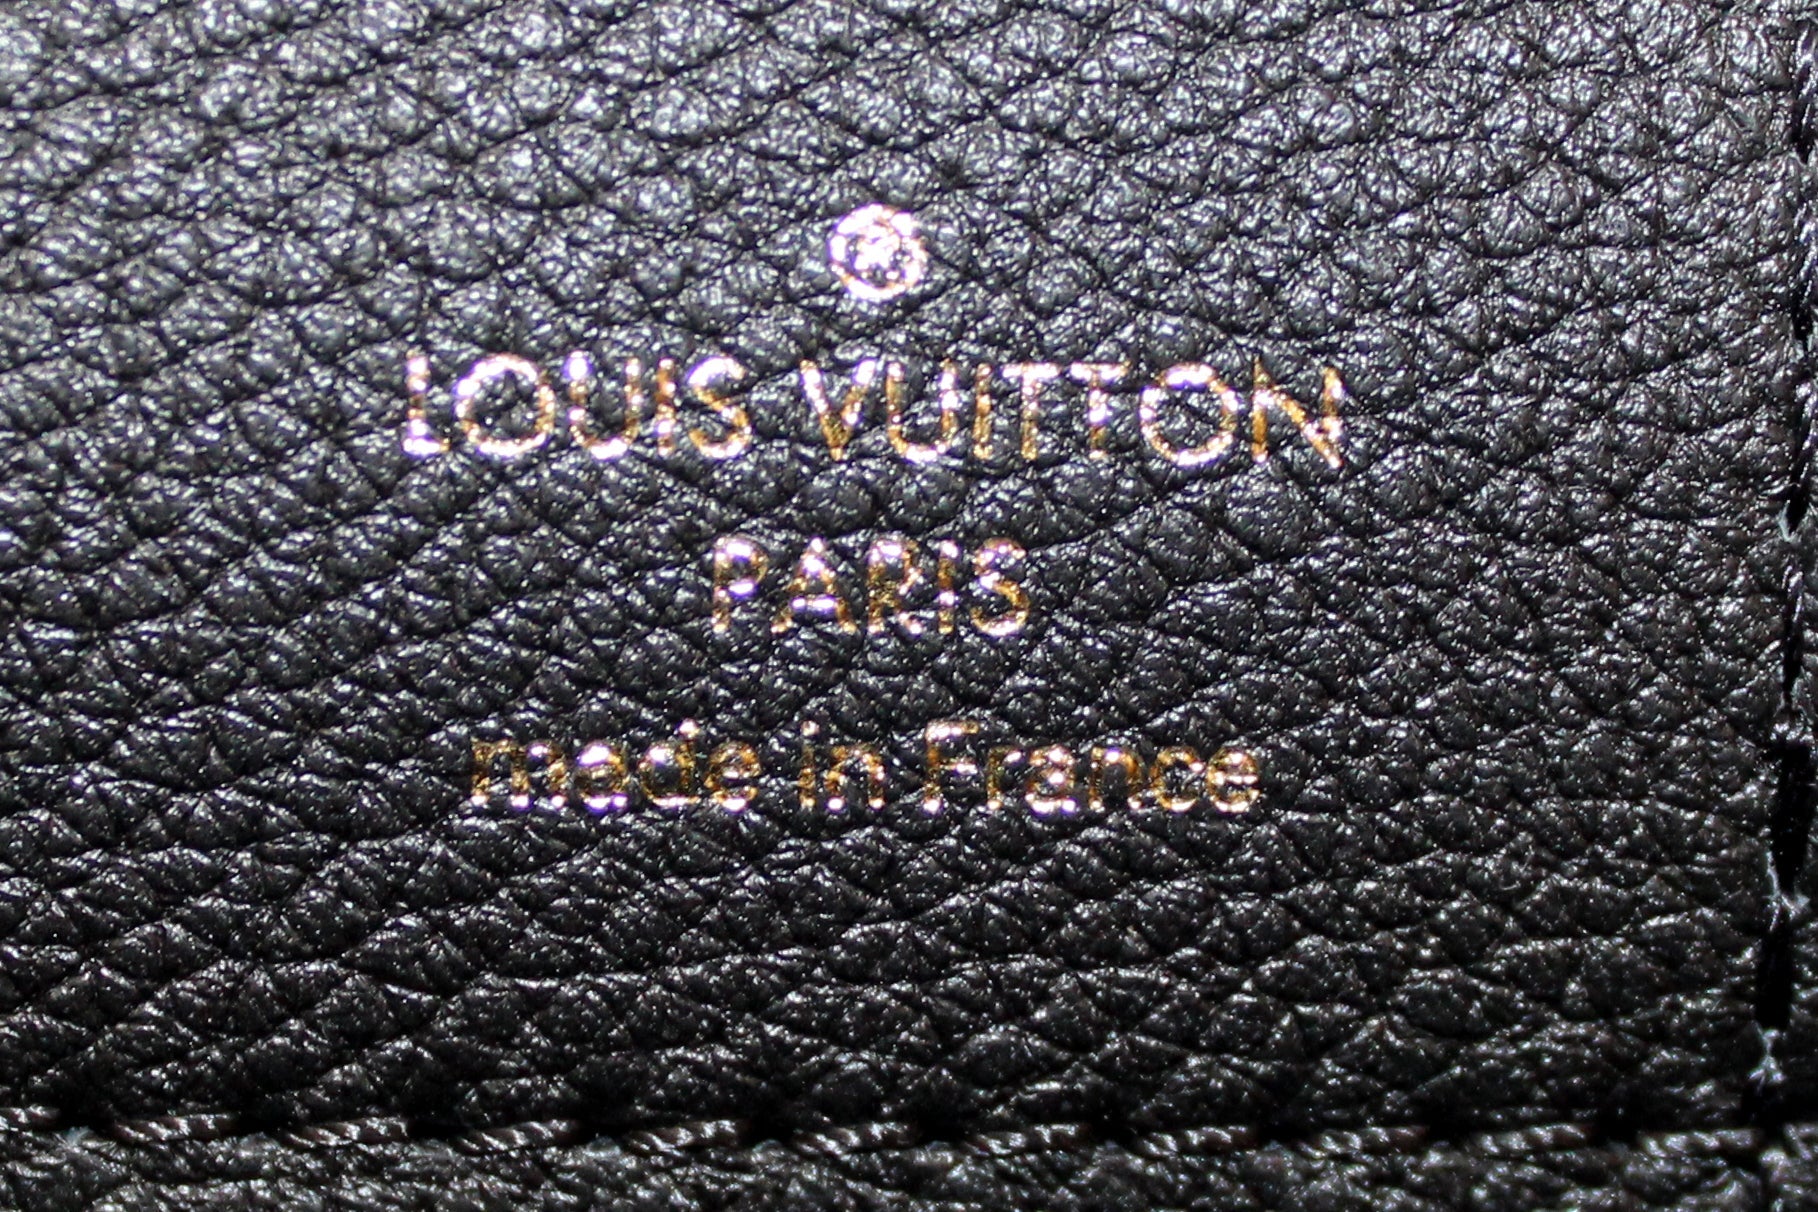 Authentic Louis Vuitton Damier Ebene Canvas Ribera PM Handbag – Paris  Station Shop